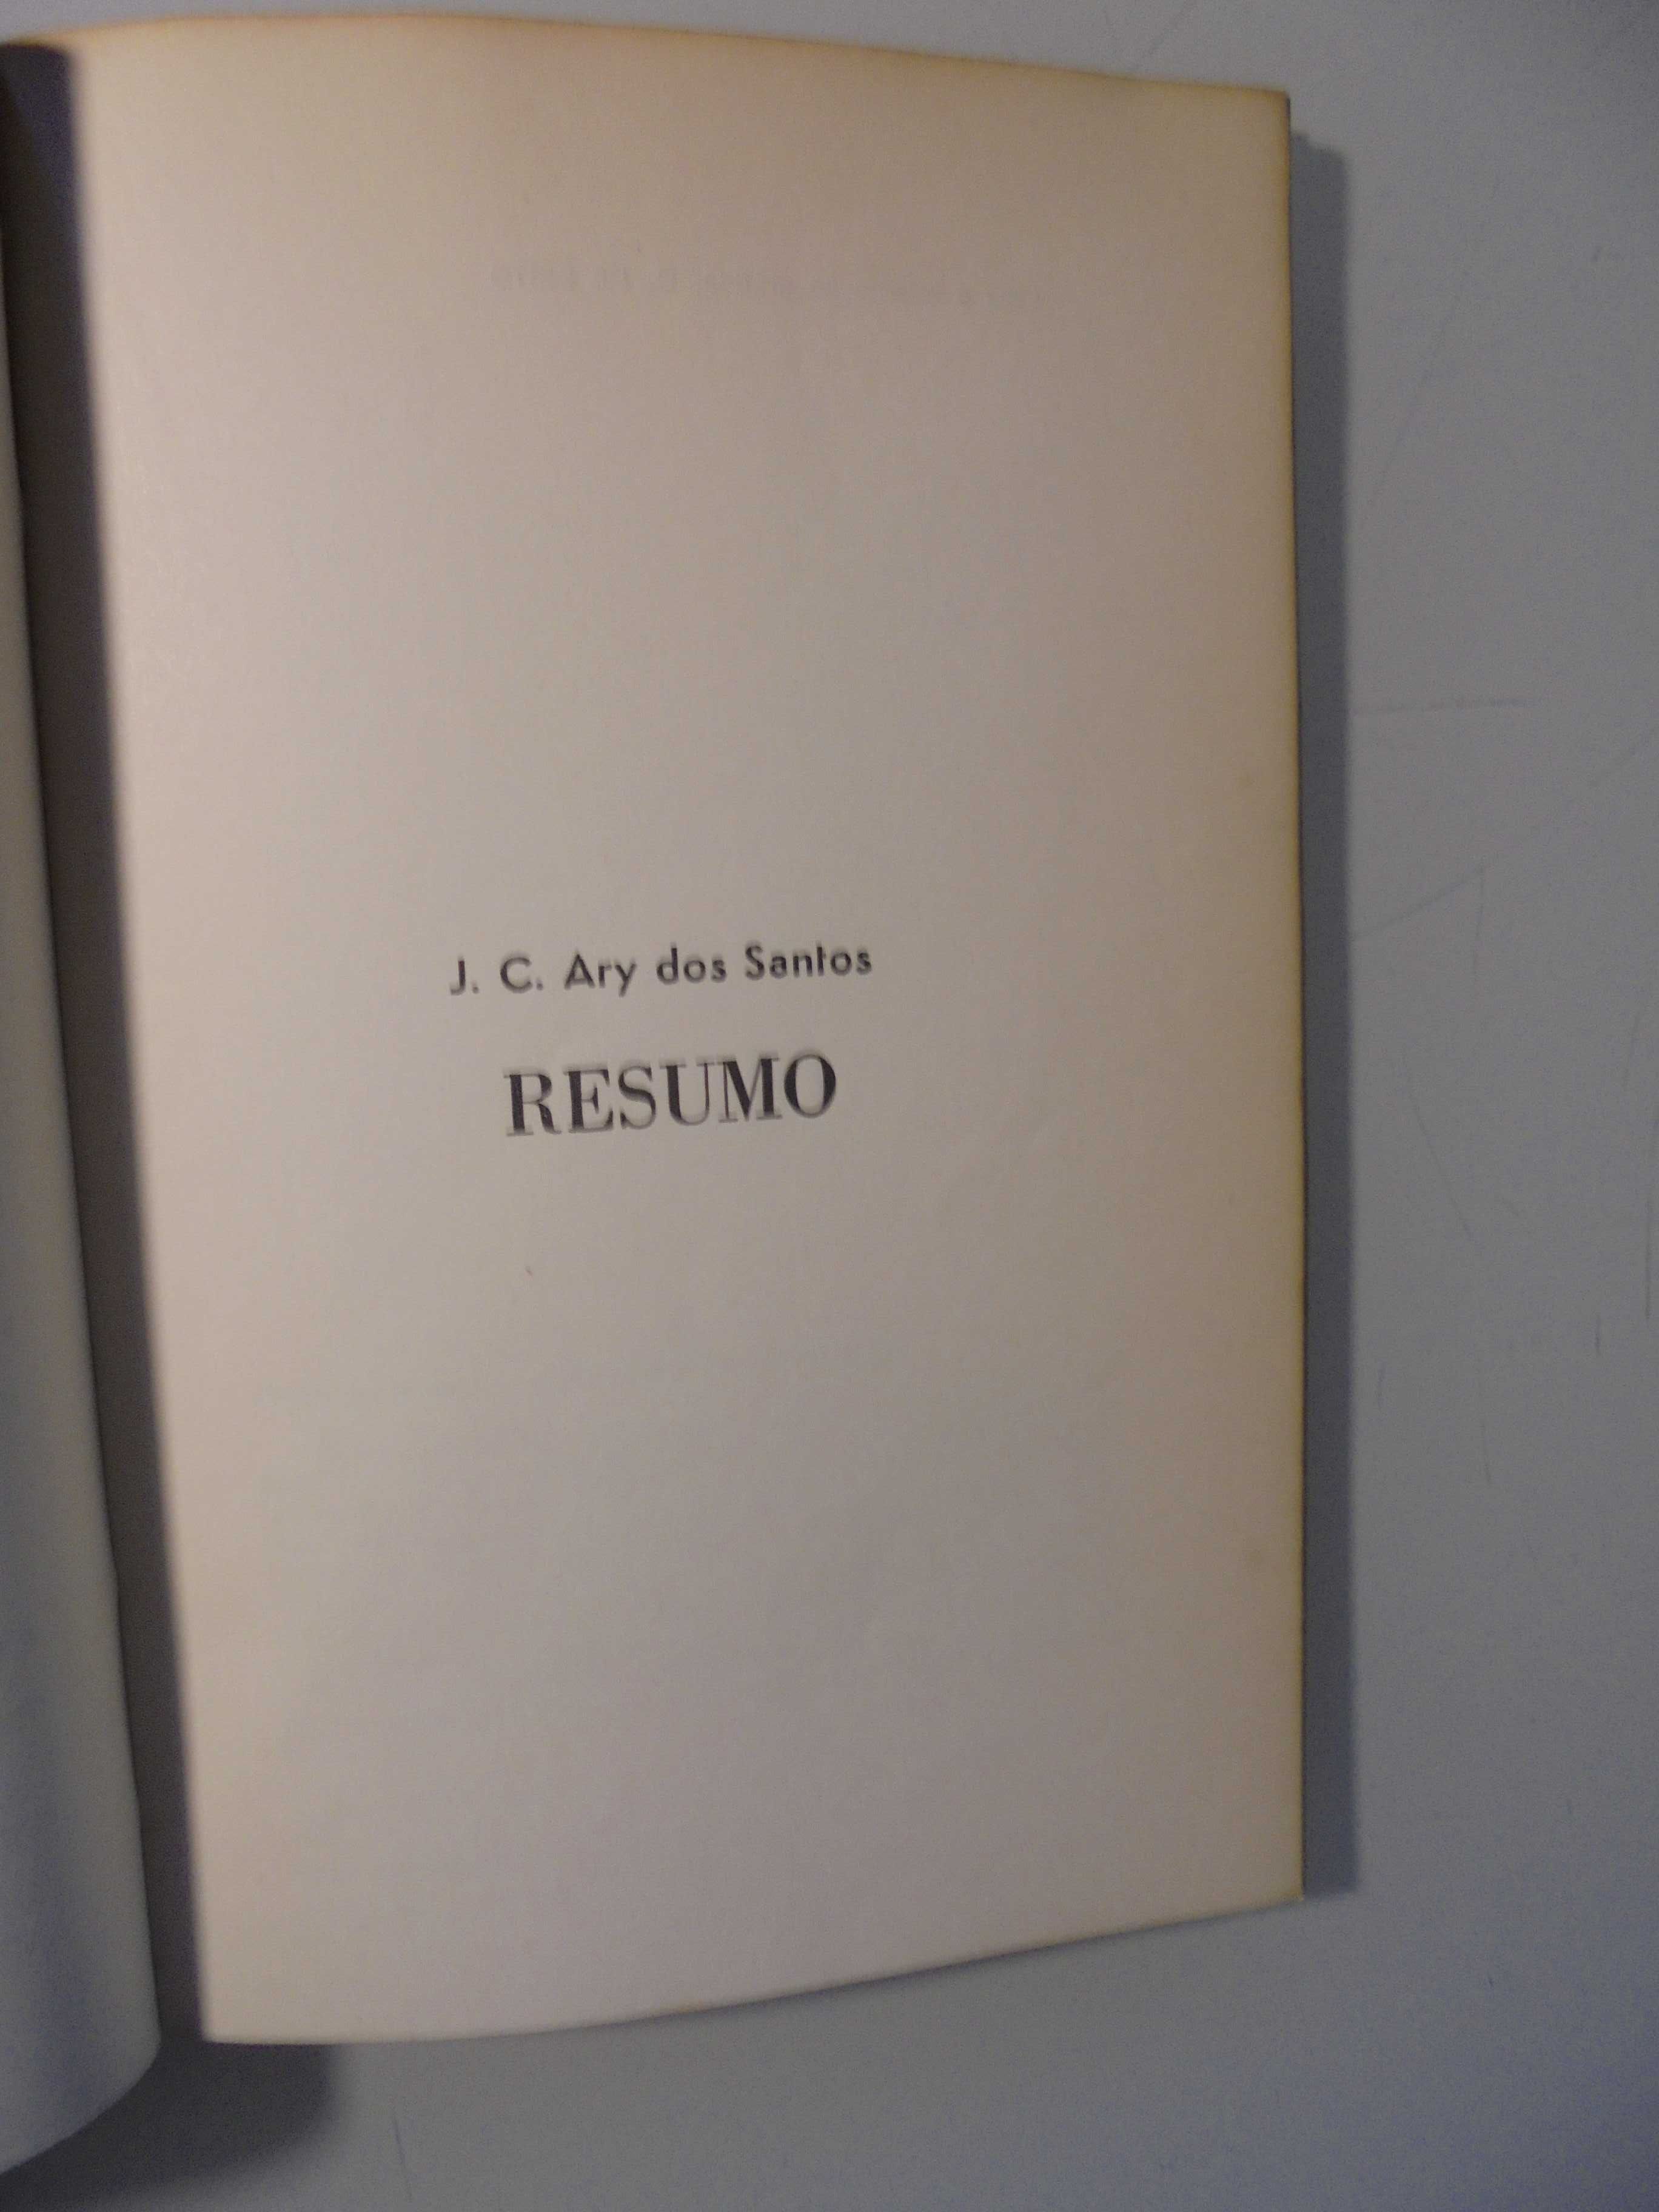 Santos (J.C.Ary dos);Resumo;Edição de Autor,1ª Edição,1972,